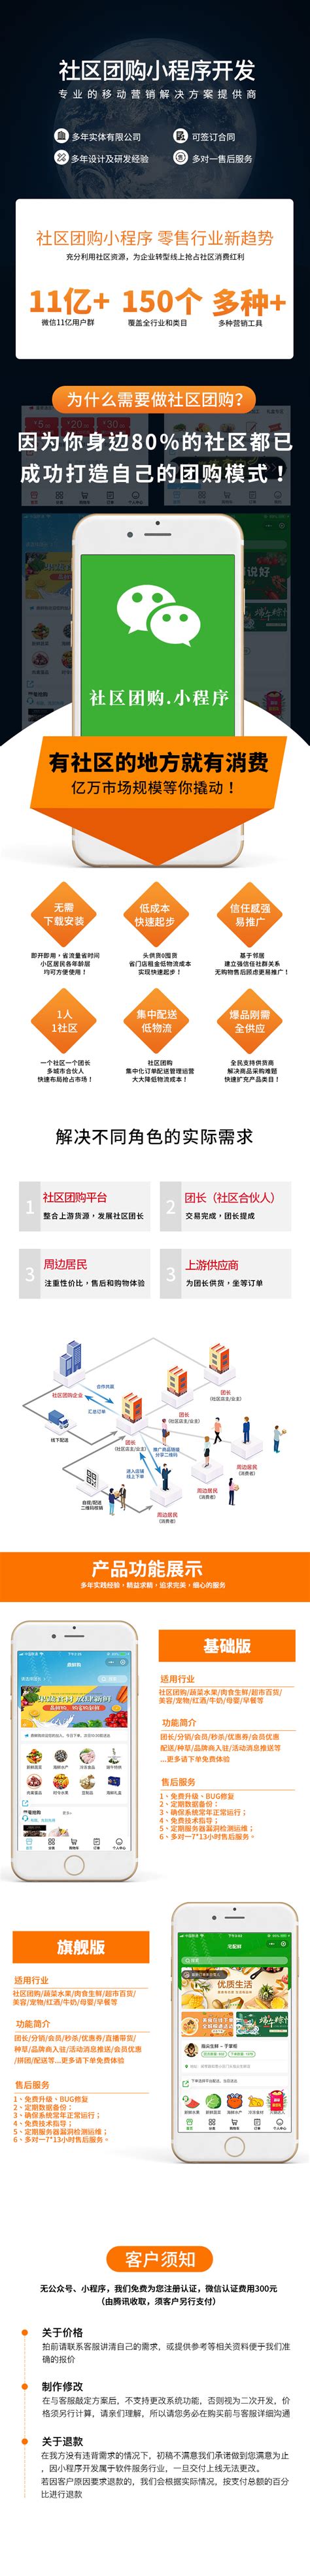 2021年中国网络购物行业市场回顾及2022年发展前景预测分析_财富号_东方财富网